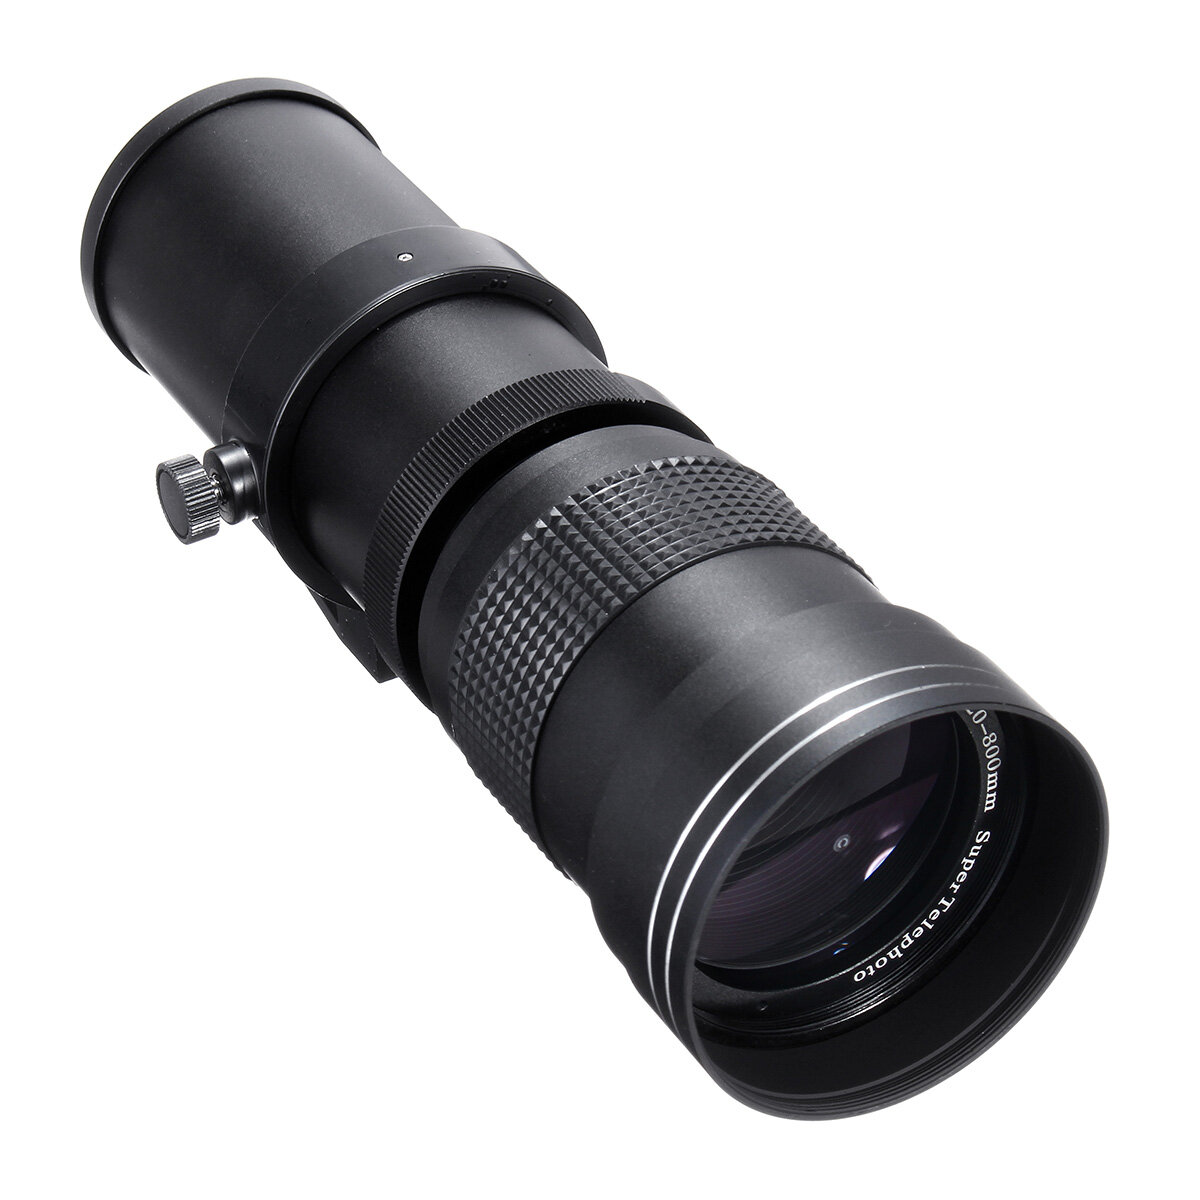 IPRee® 420-800mm F/8.3-16 Super-Teleobjektiv mit manuellem Zoom + T-Mount für Nikon, Sony, Pentax SLR-Kamera